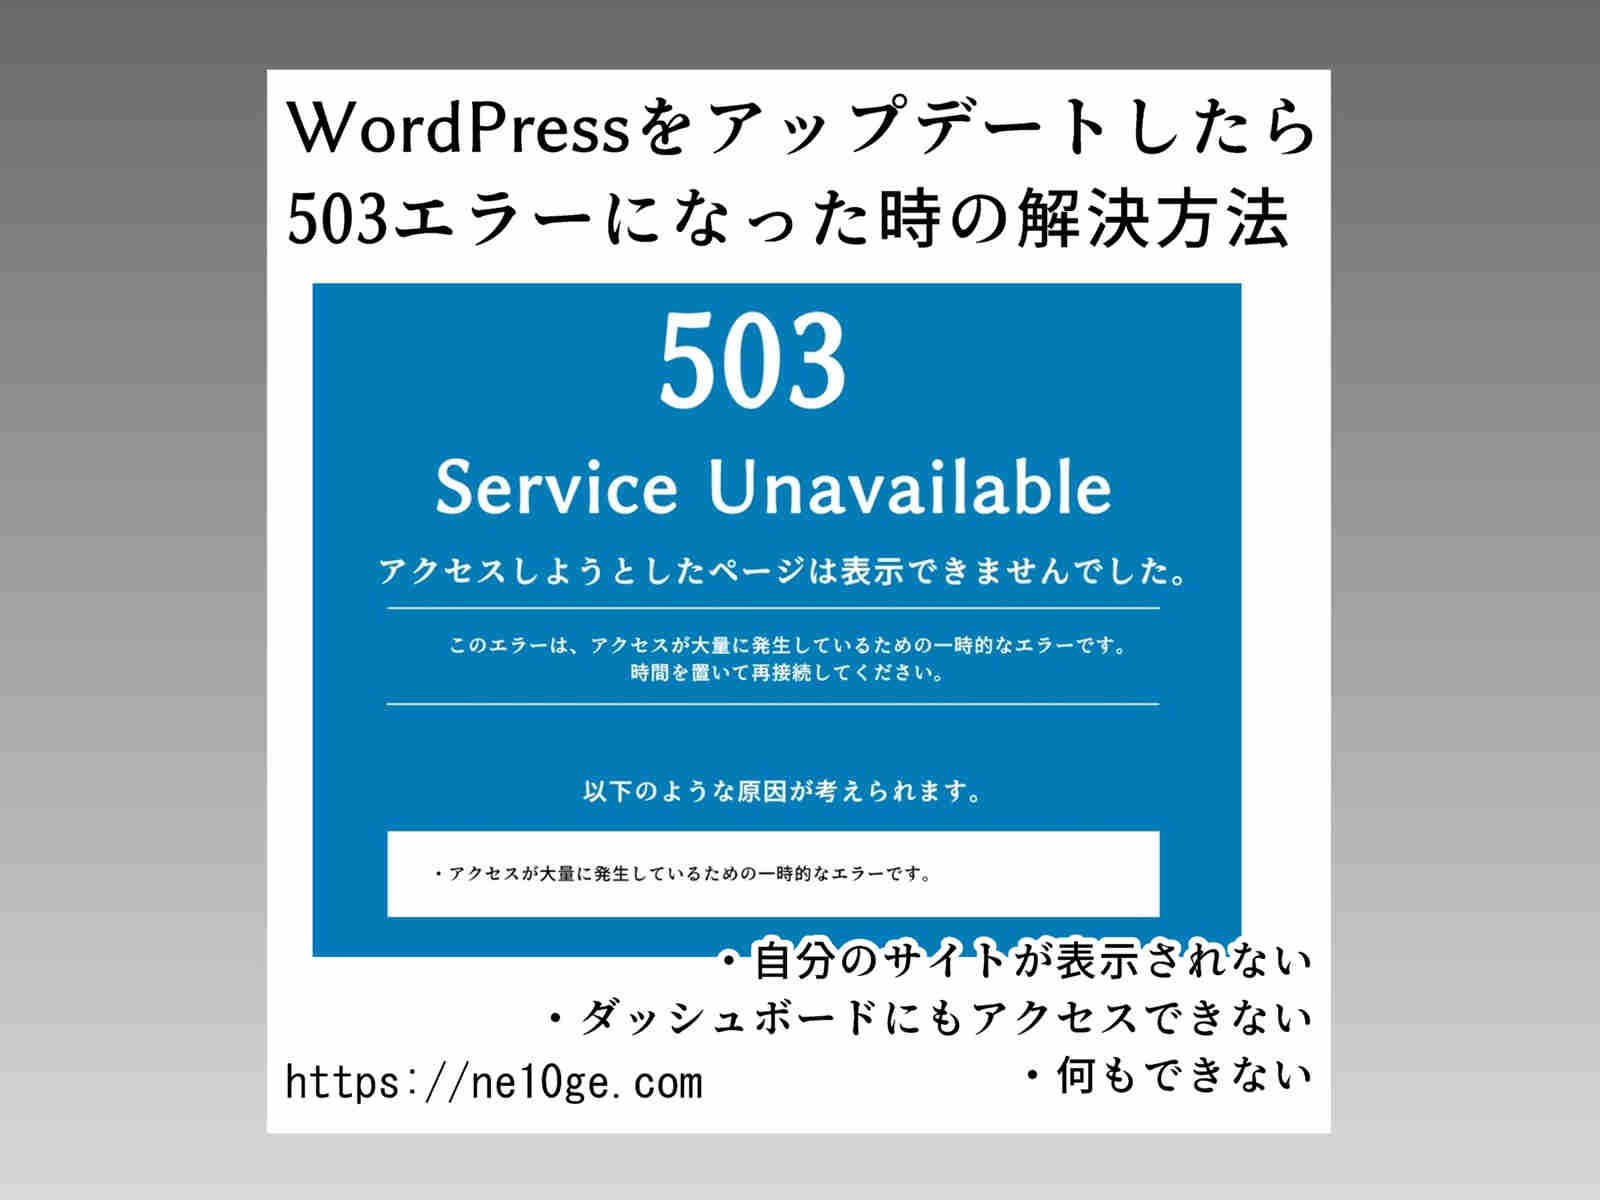 WordPressのアップデート後、ワードプレスの更新後に503エラーが出た時の解決方法です。